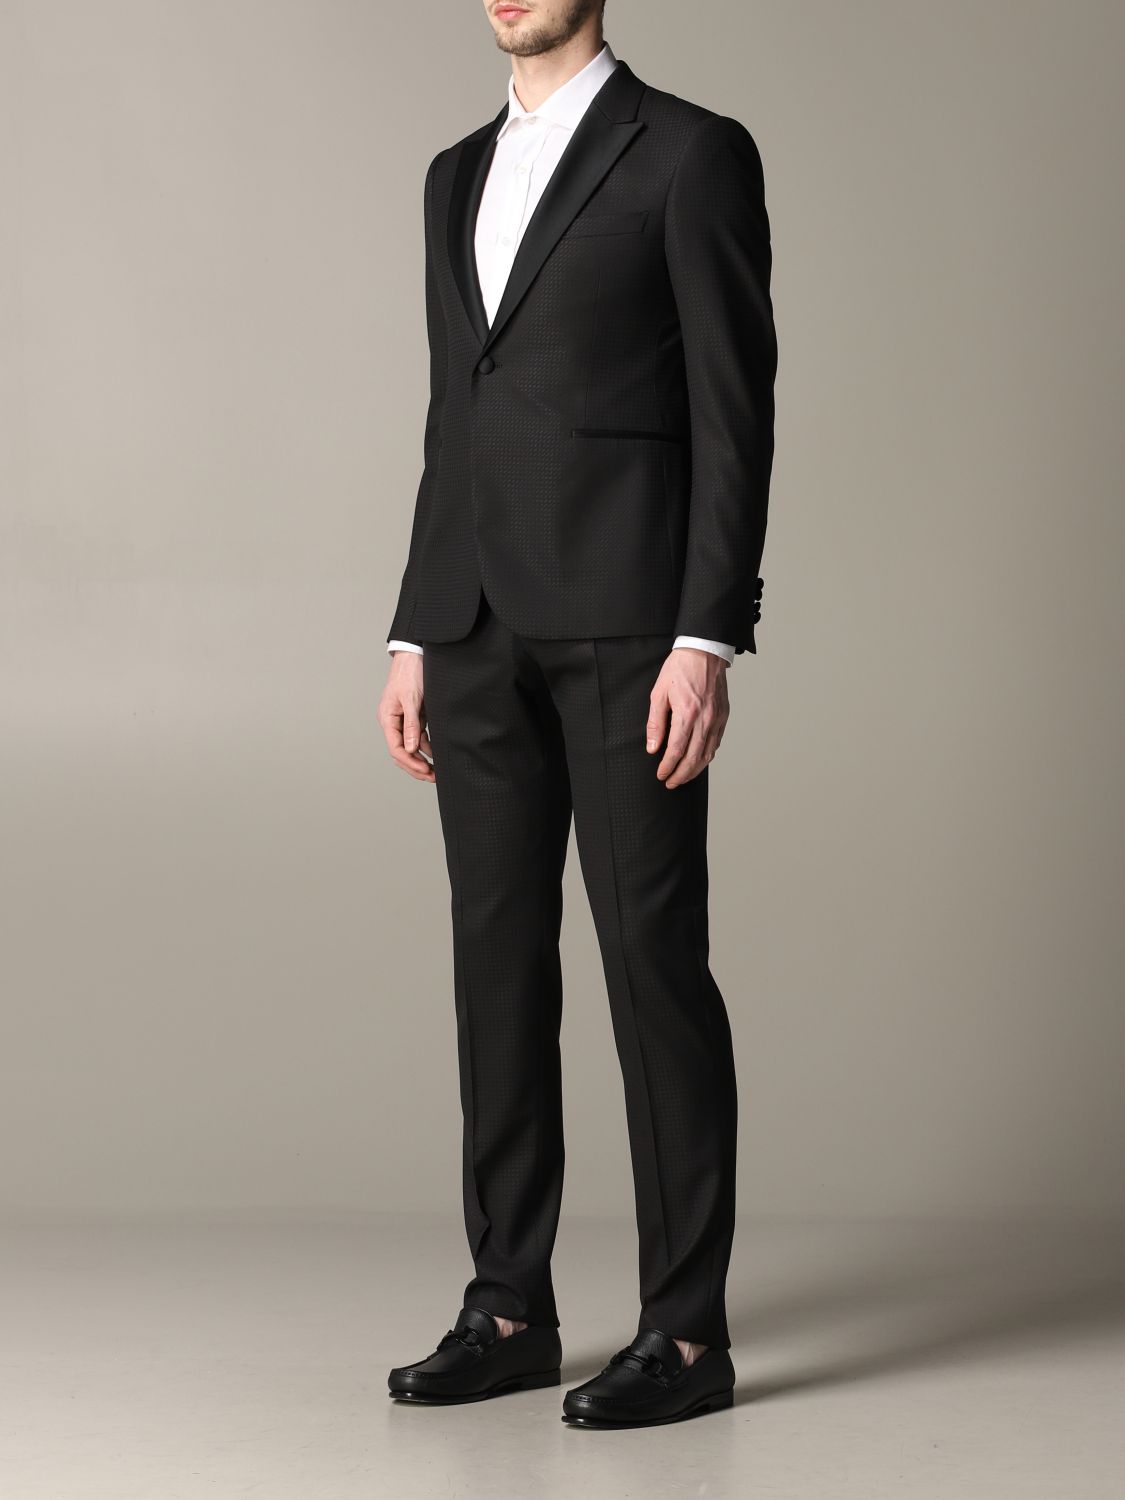 Emporio Armani Outlet: suit for men - Black | Emporio Armani suit ...